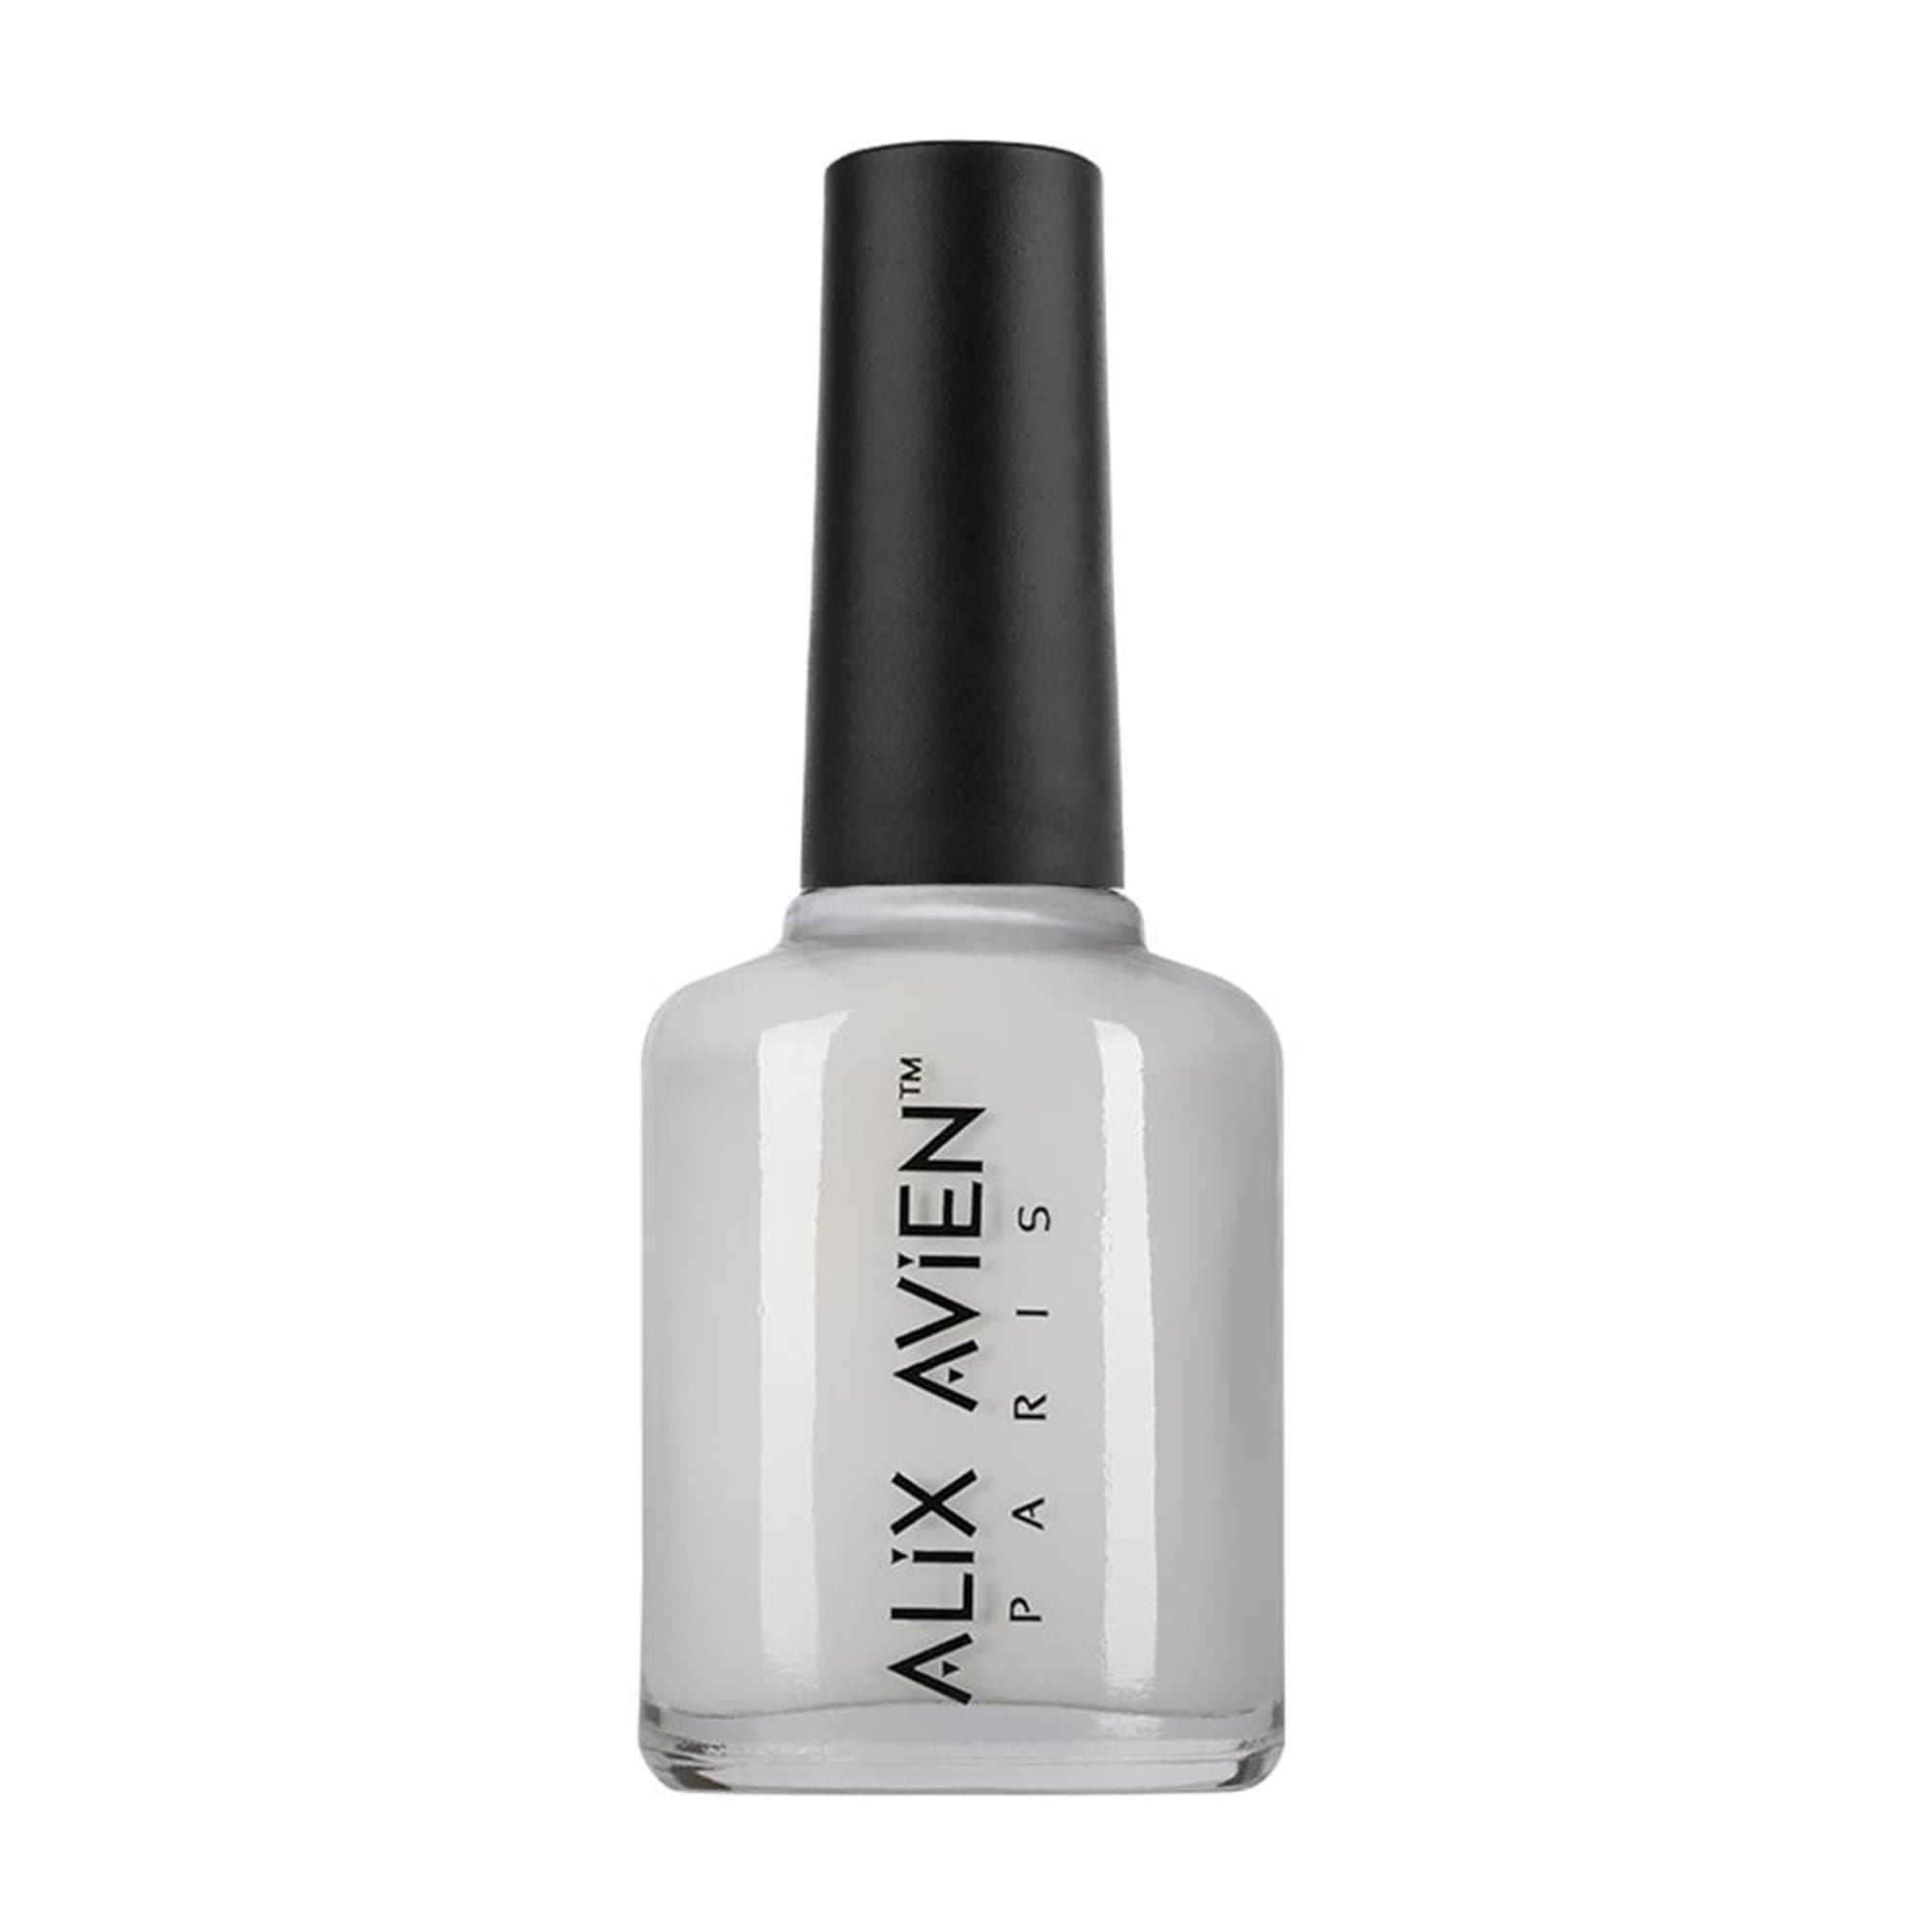 Alix Avien - Nail Polish No.03 (Off-White) - Eson Direct